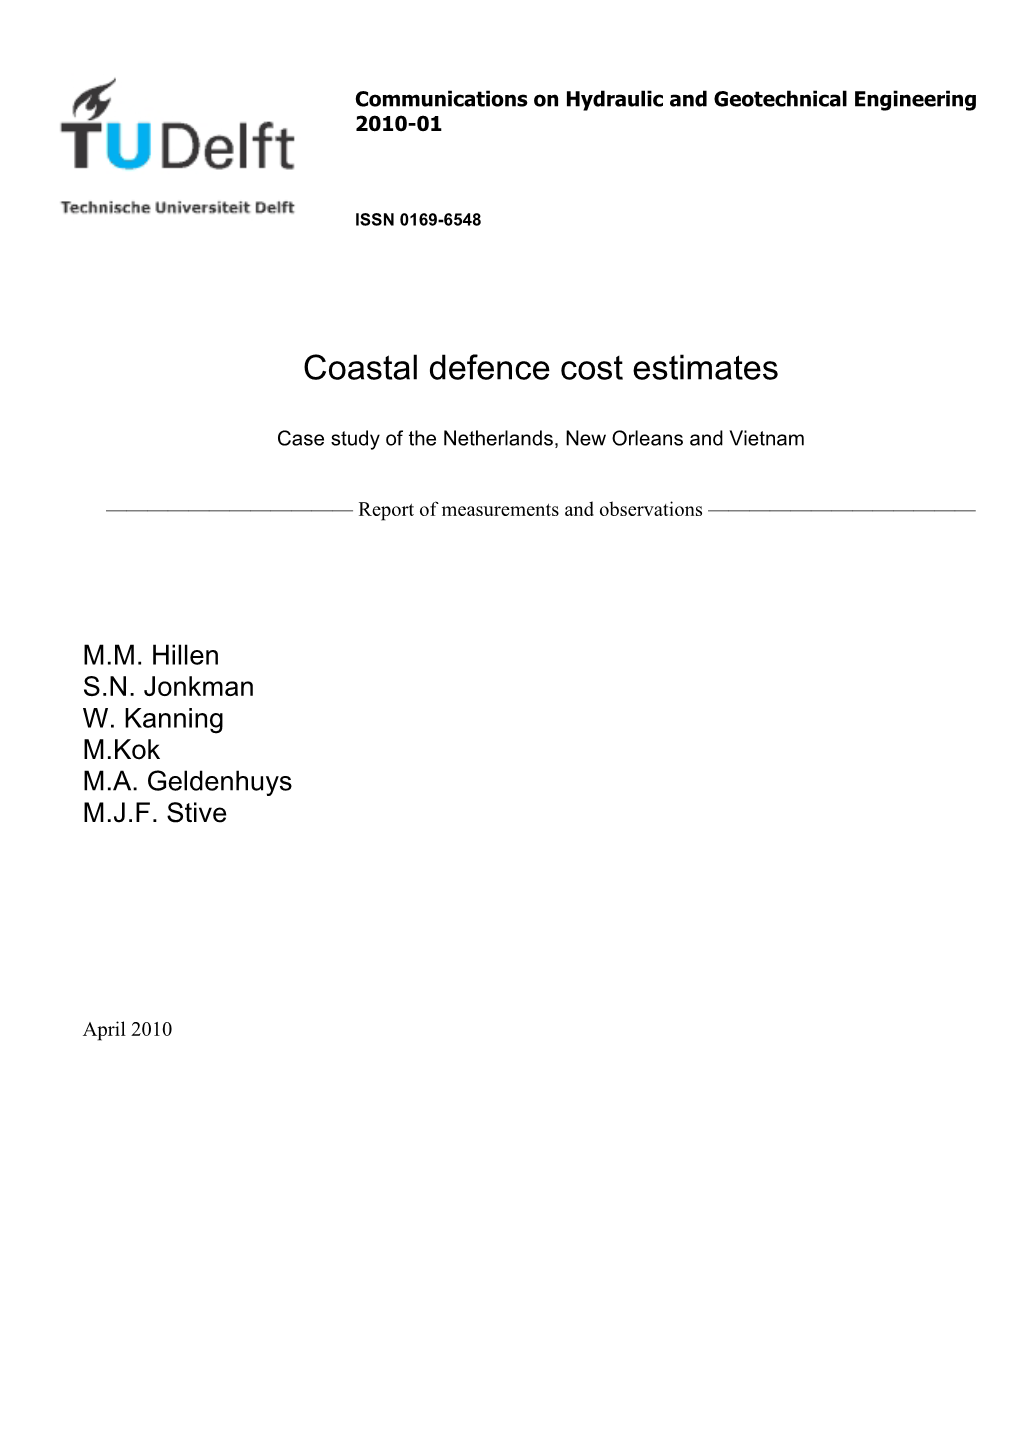 Coastal Defence Cost Estimates